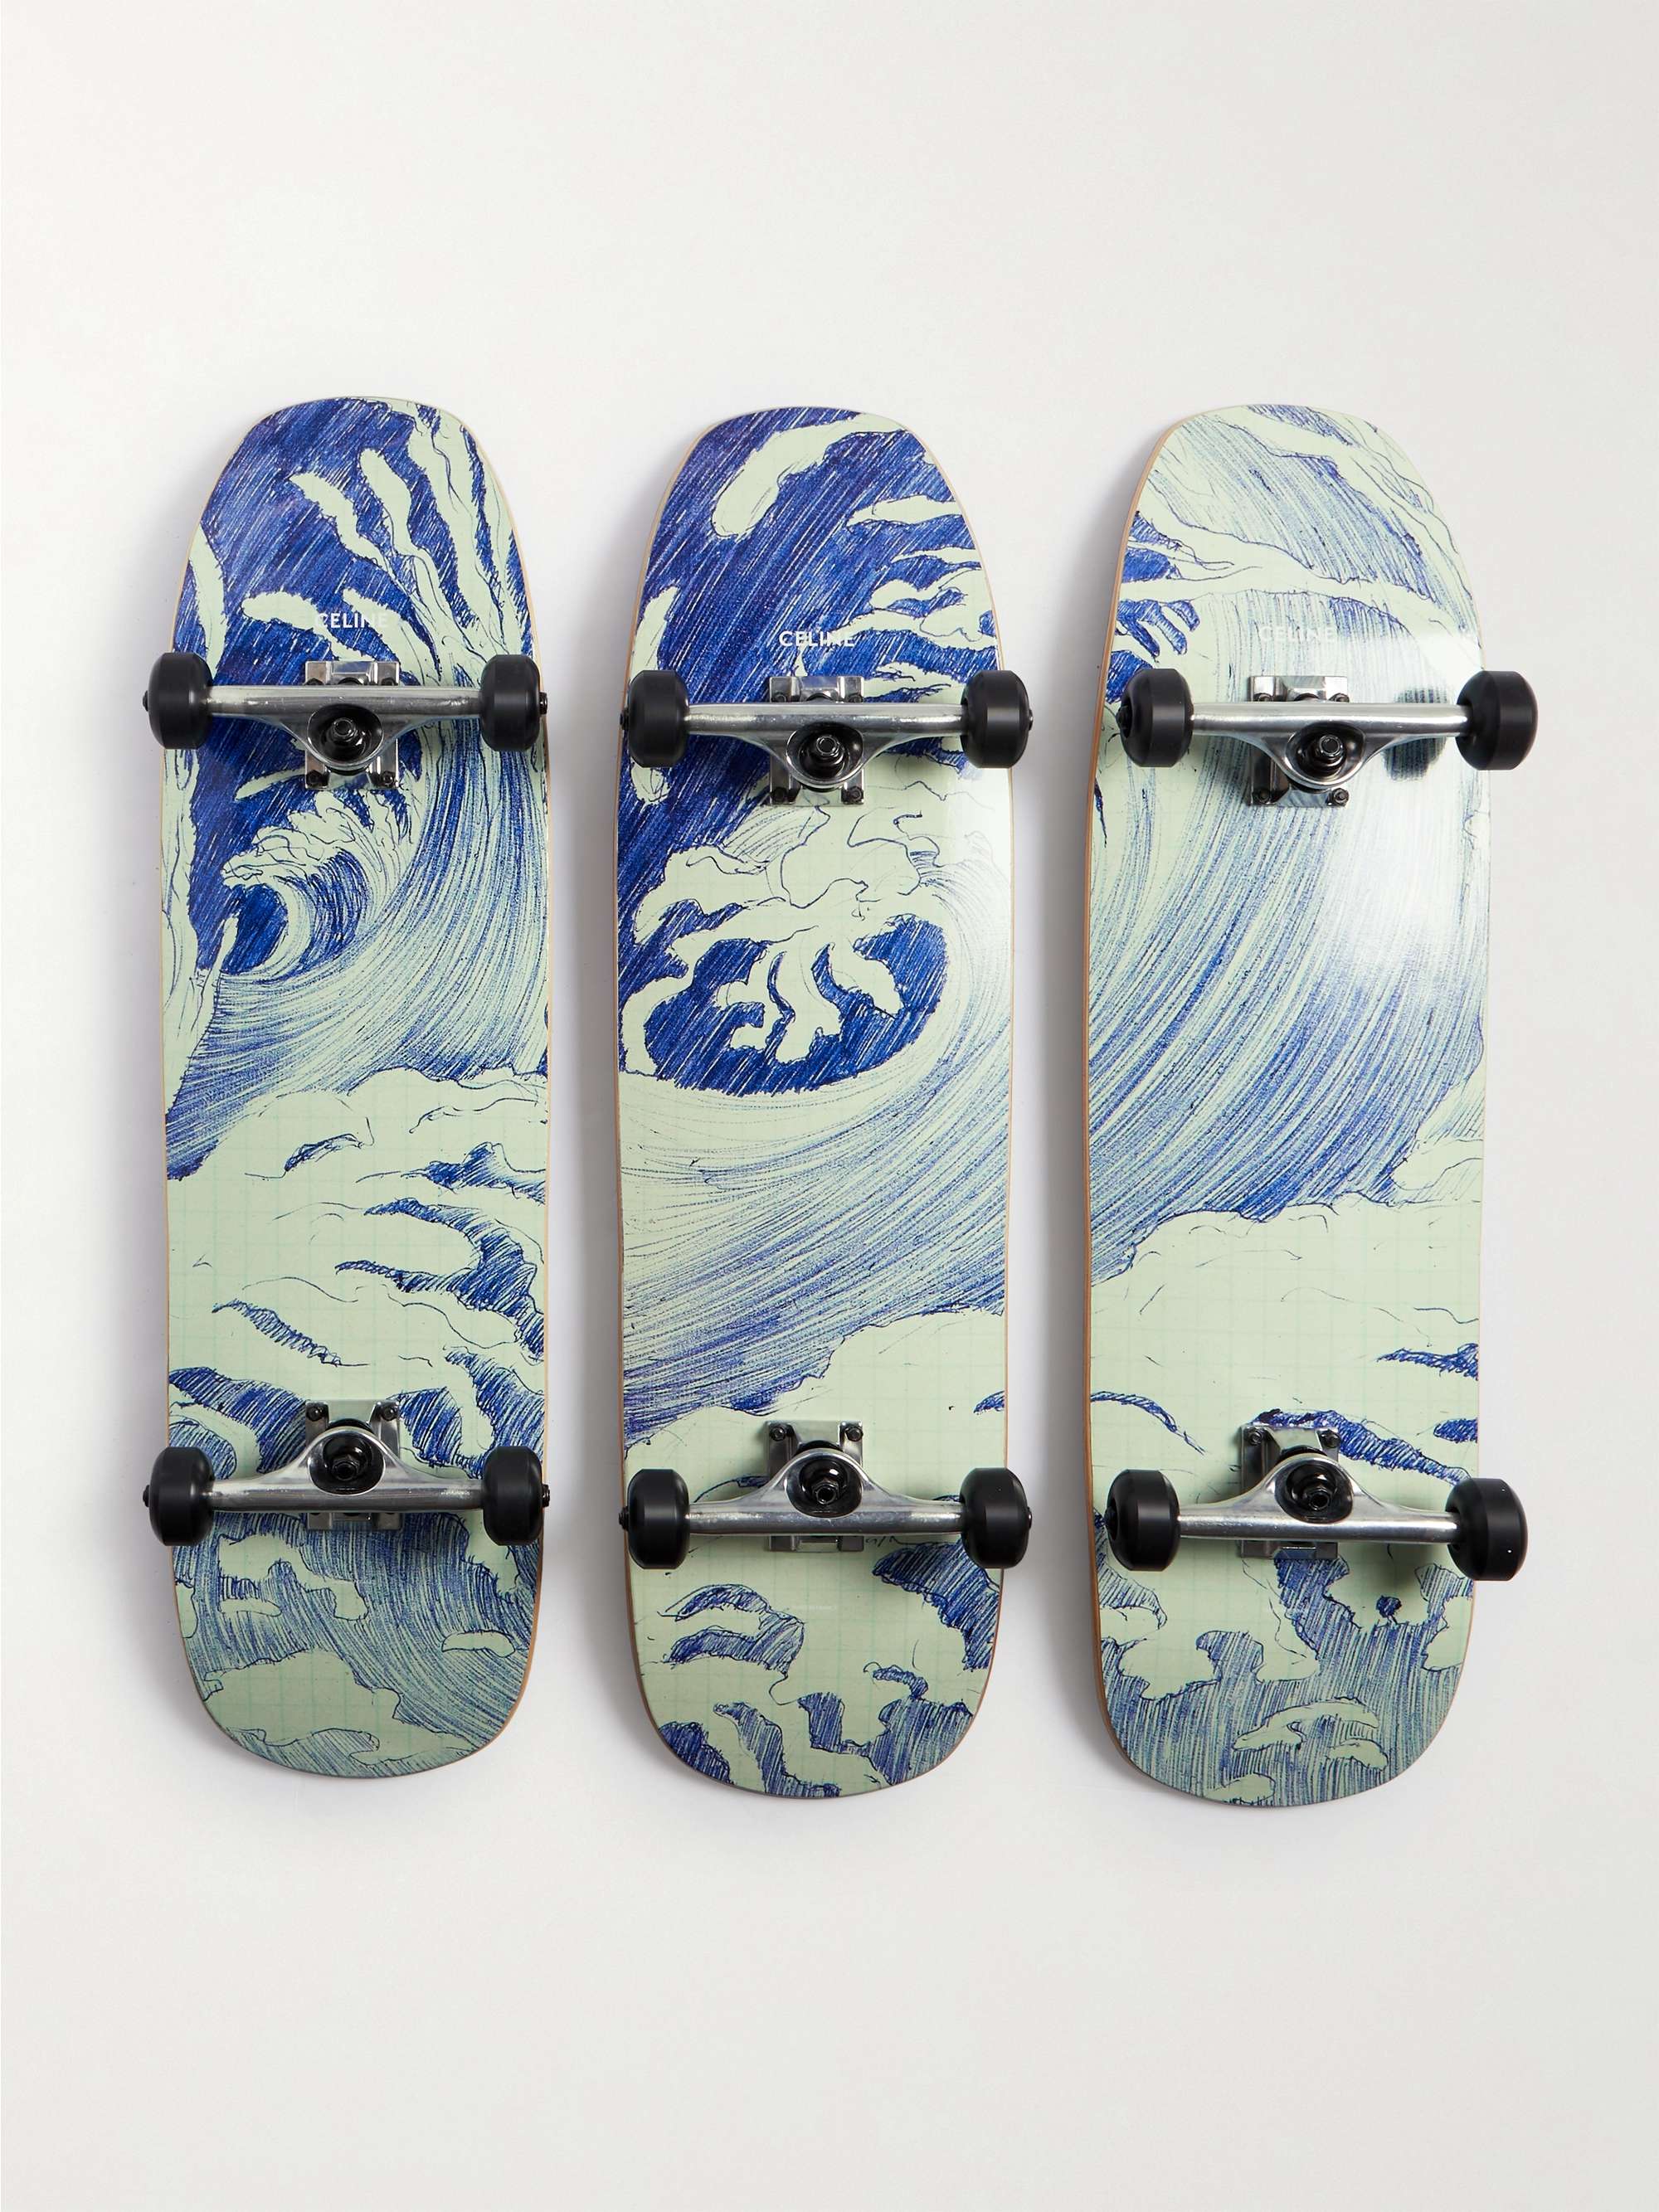 CELINE HOMME Printed Wooden Skateboard